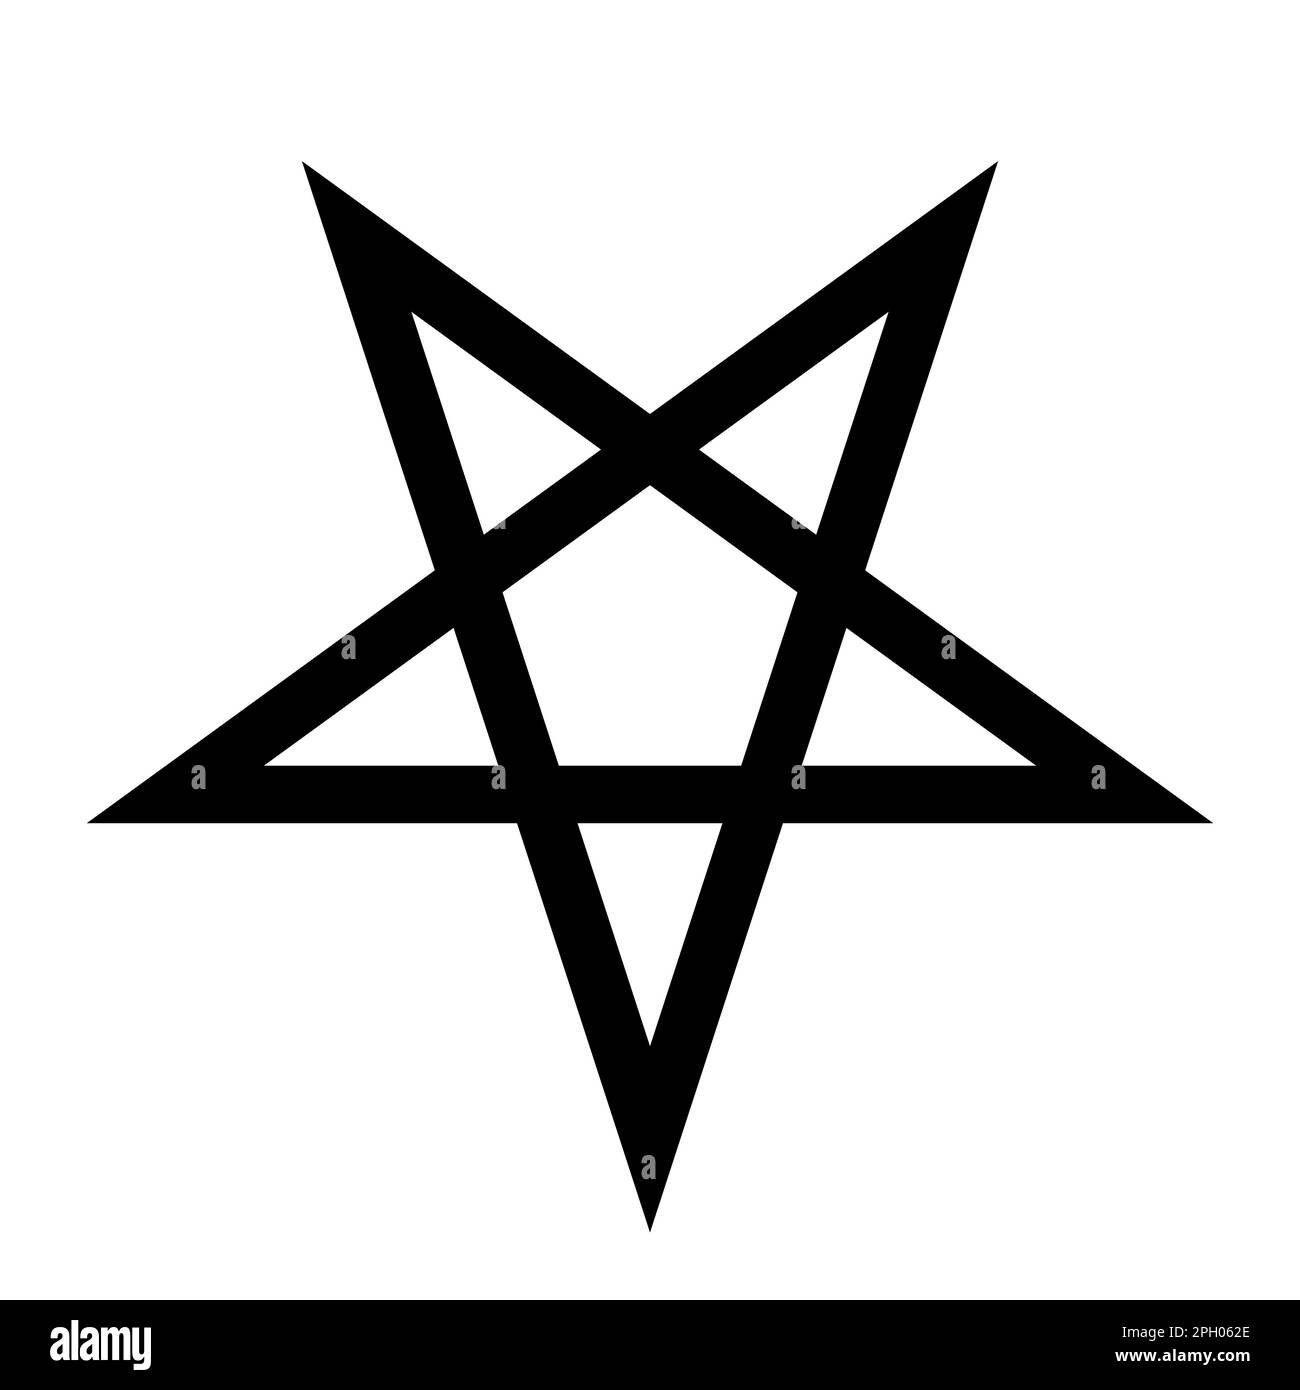 Pentagramm - Vektordarstellung eines einfachen fünfspitzigen Sterns, isoliert auf Weiß Stock Vektor